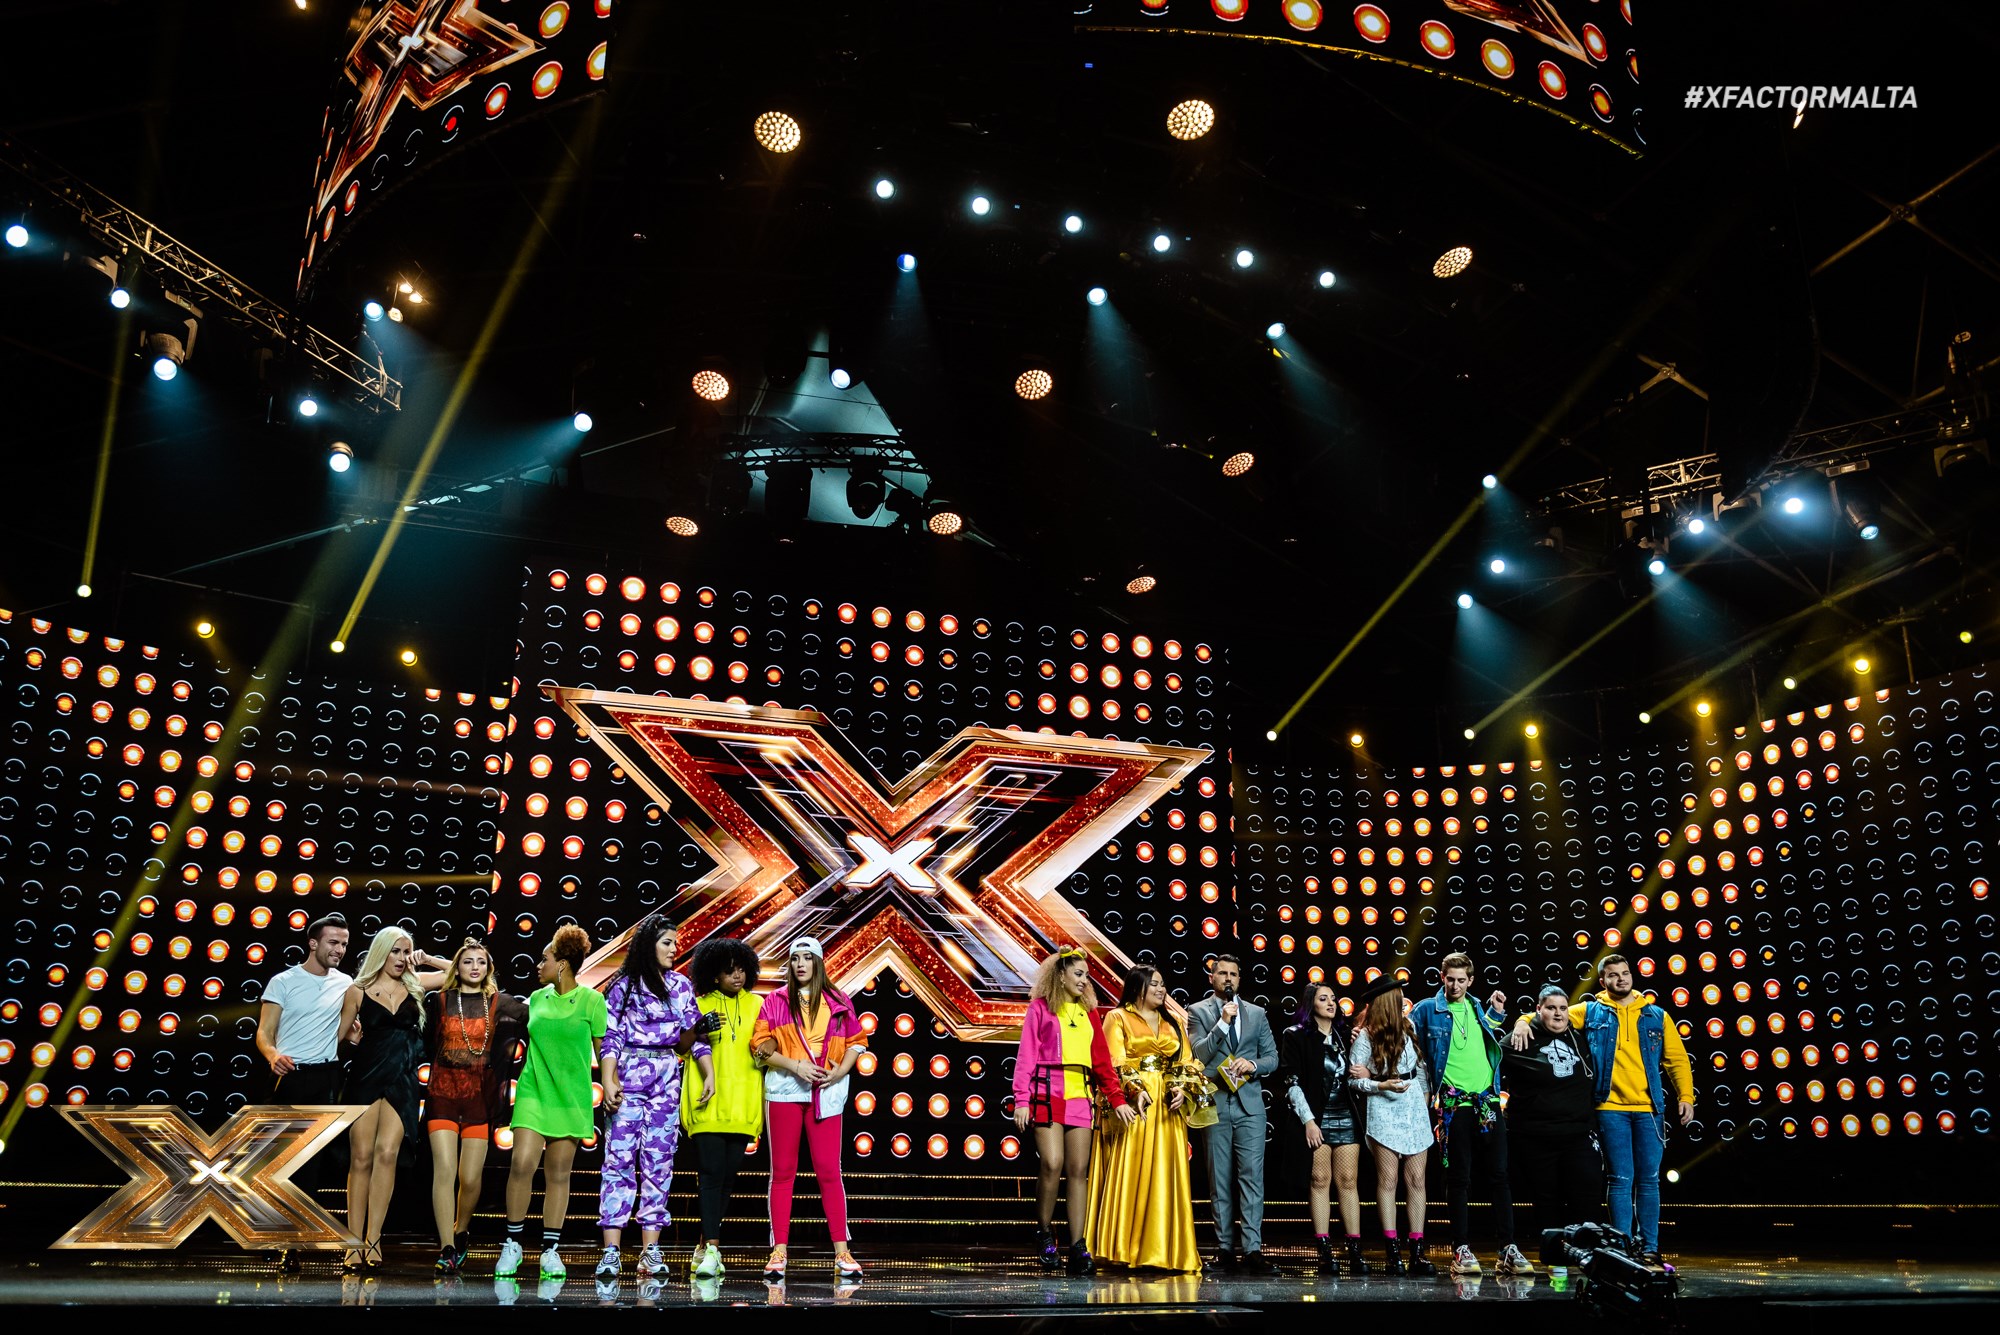 Malta: X-Factor Malta’s second live show results